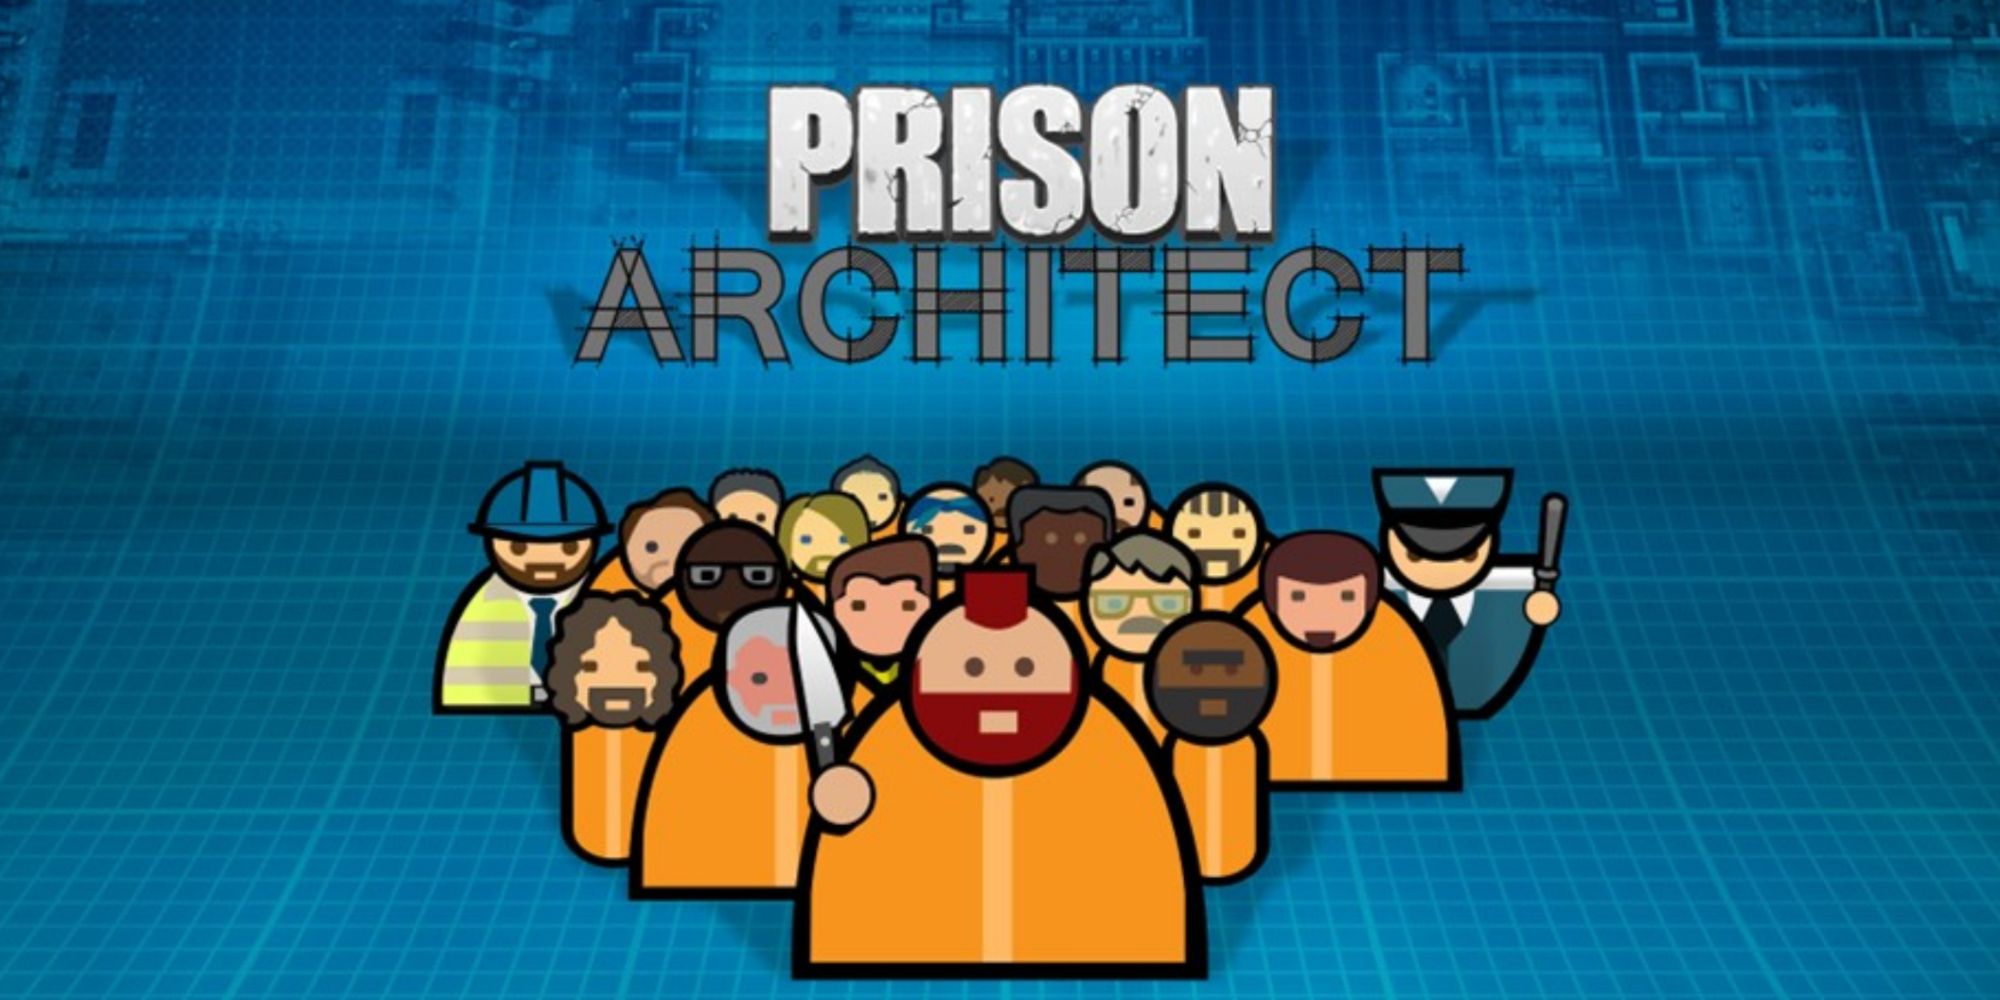 Prison Architect cover art.